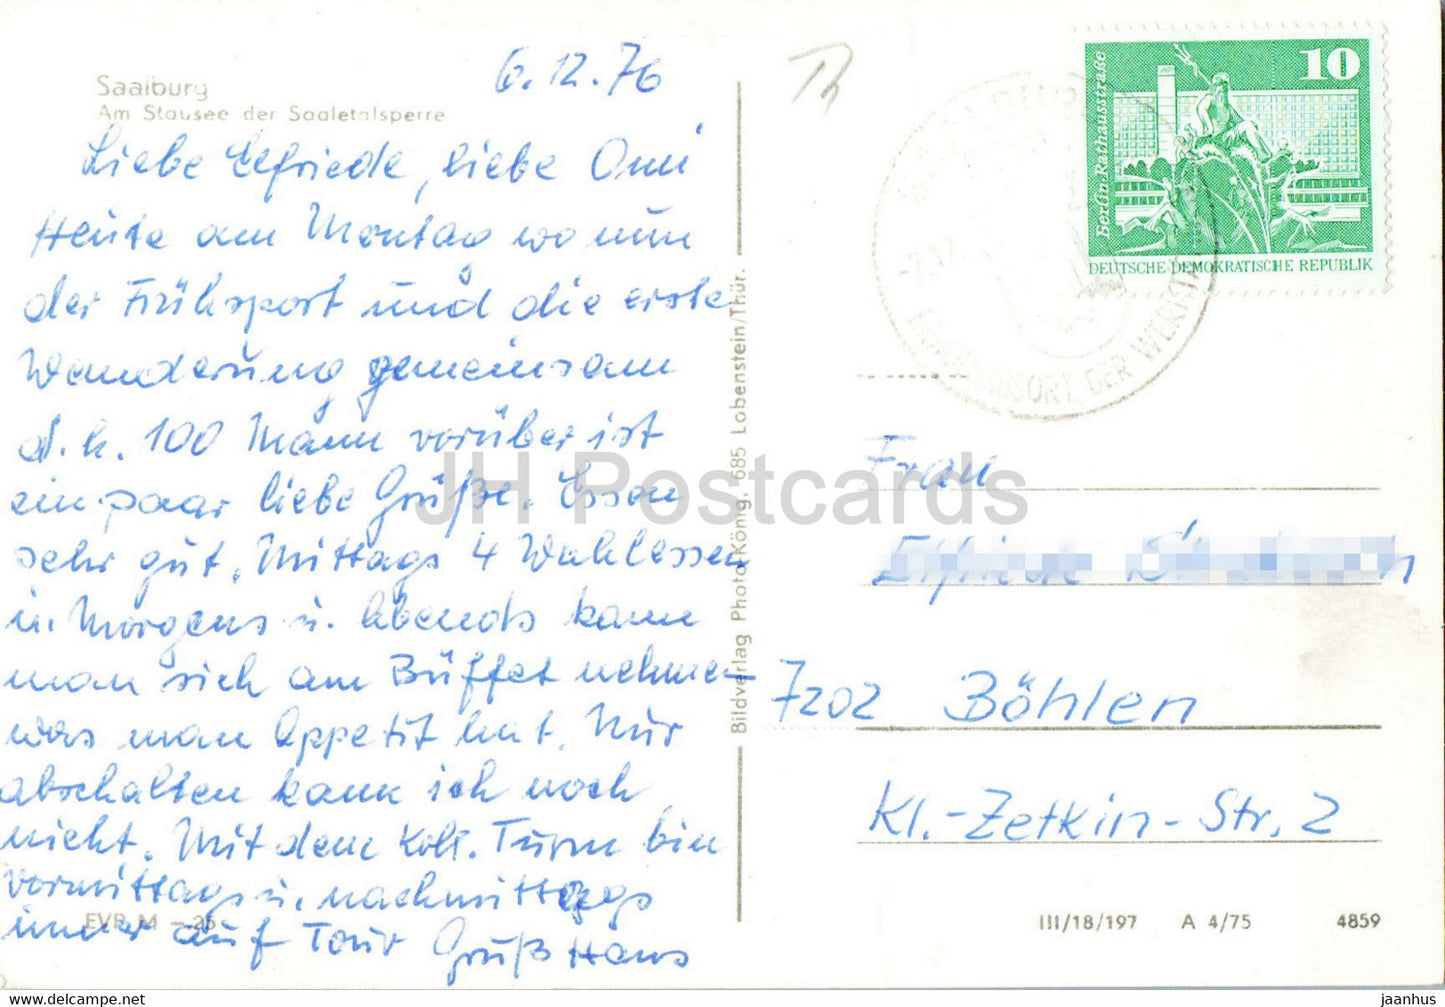 Saalburg - Am Stausee der Saaletalsperre - bridge - old postcard - 1976 - Germany DDR - used